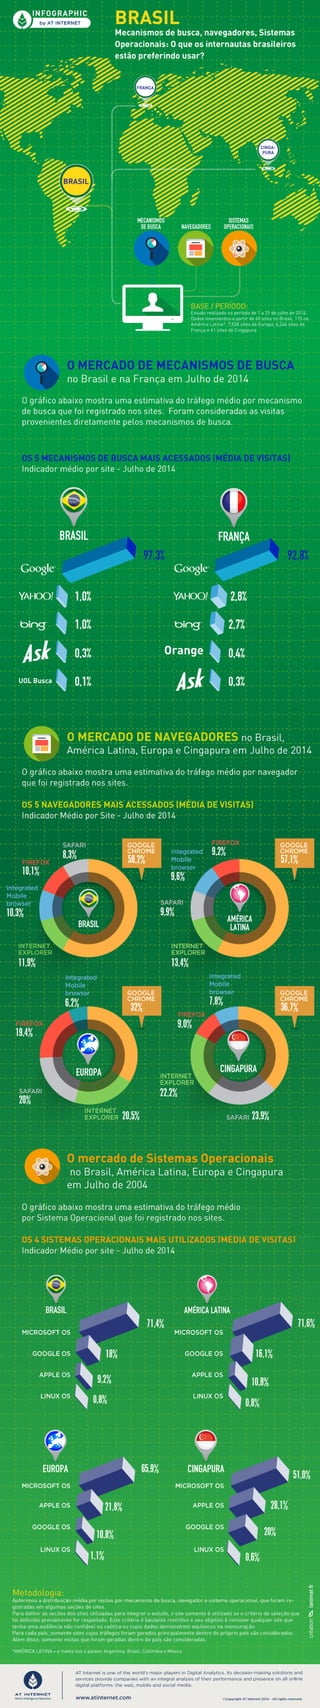 Brasil mecanismos de busca, navegadores, sistemas operacionais - Julho 2014